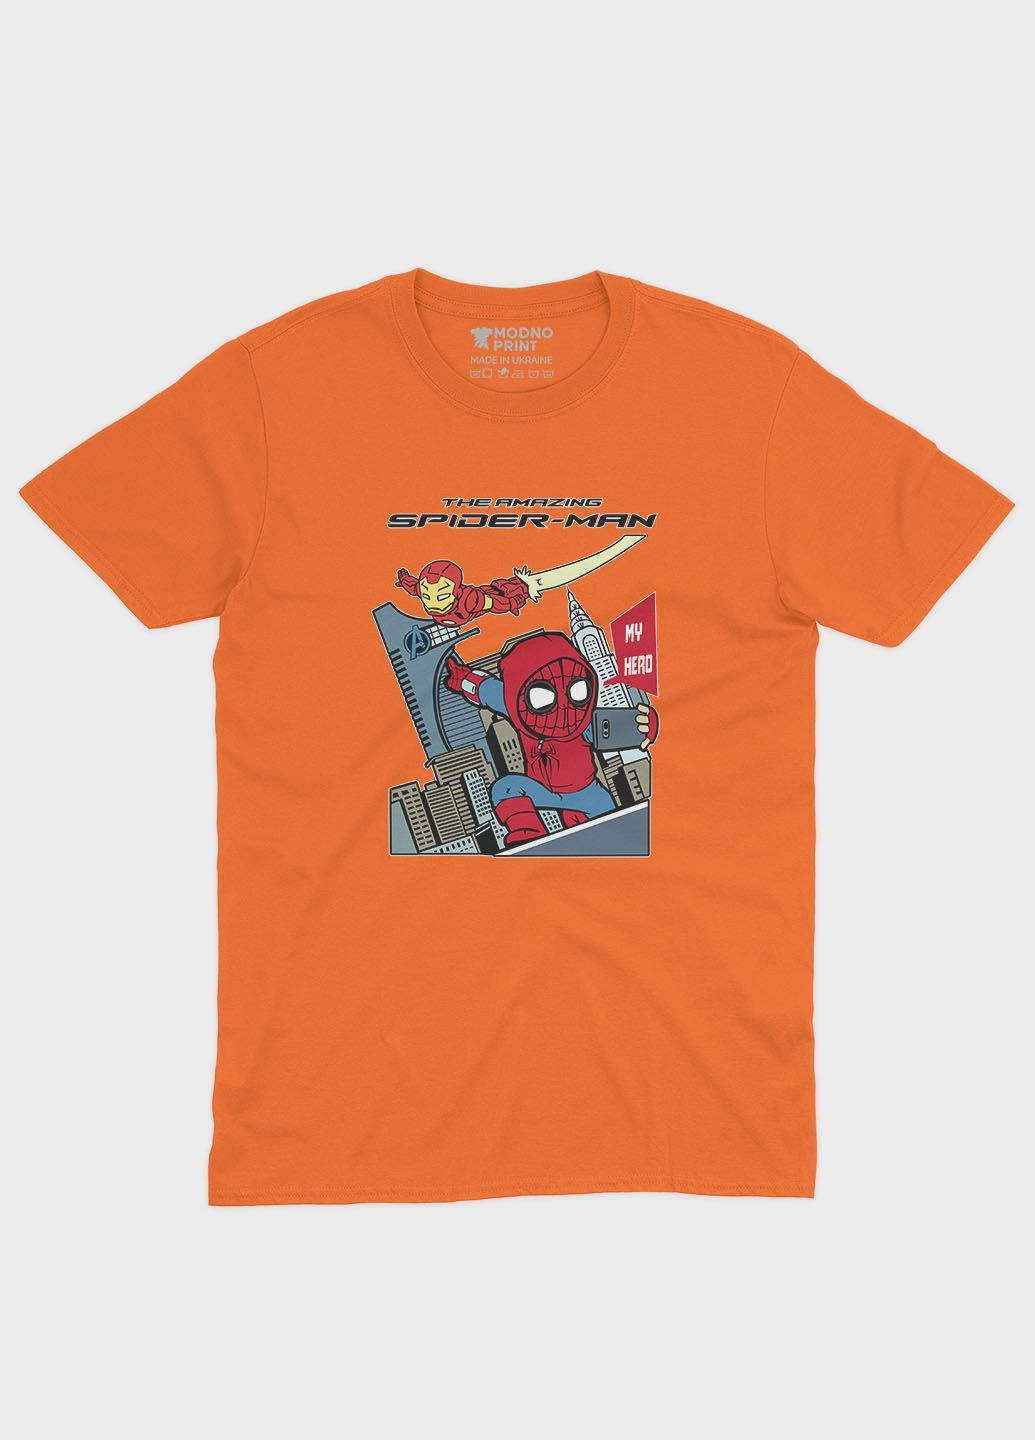 Оранжевая демисезонная футболка для девочки с принтом супергероя - человек-паук (ts001-1-ora-006-014-074-g) Modno